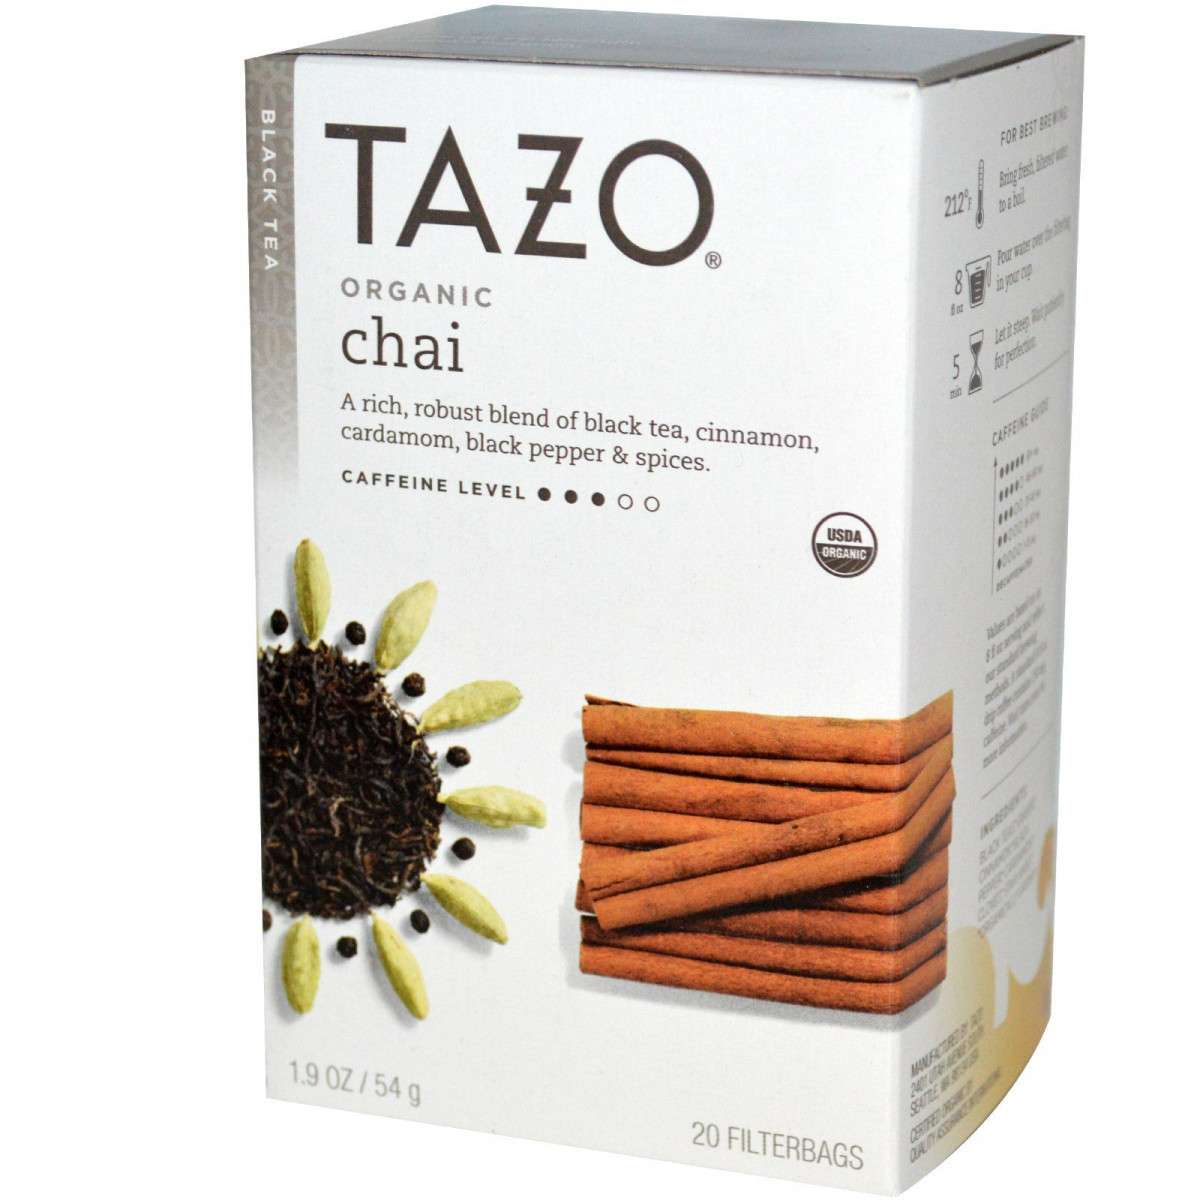 Tazo Teas Органический черный чай в пакетиках, 100% натуральный, согревающий, 20 фильтр-пакетиков 19 унции (54 г)